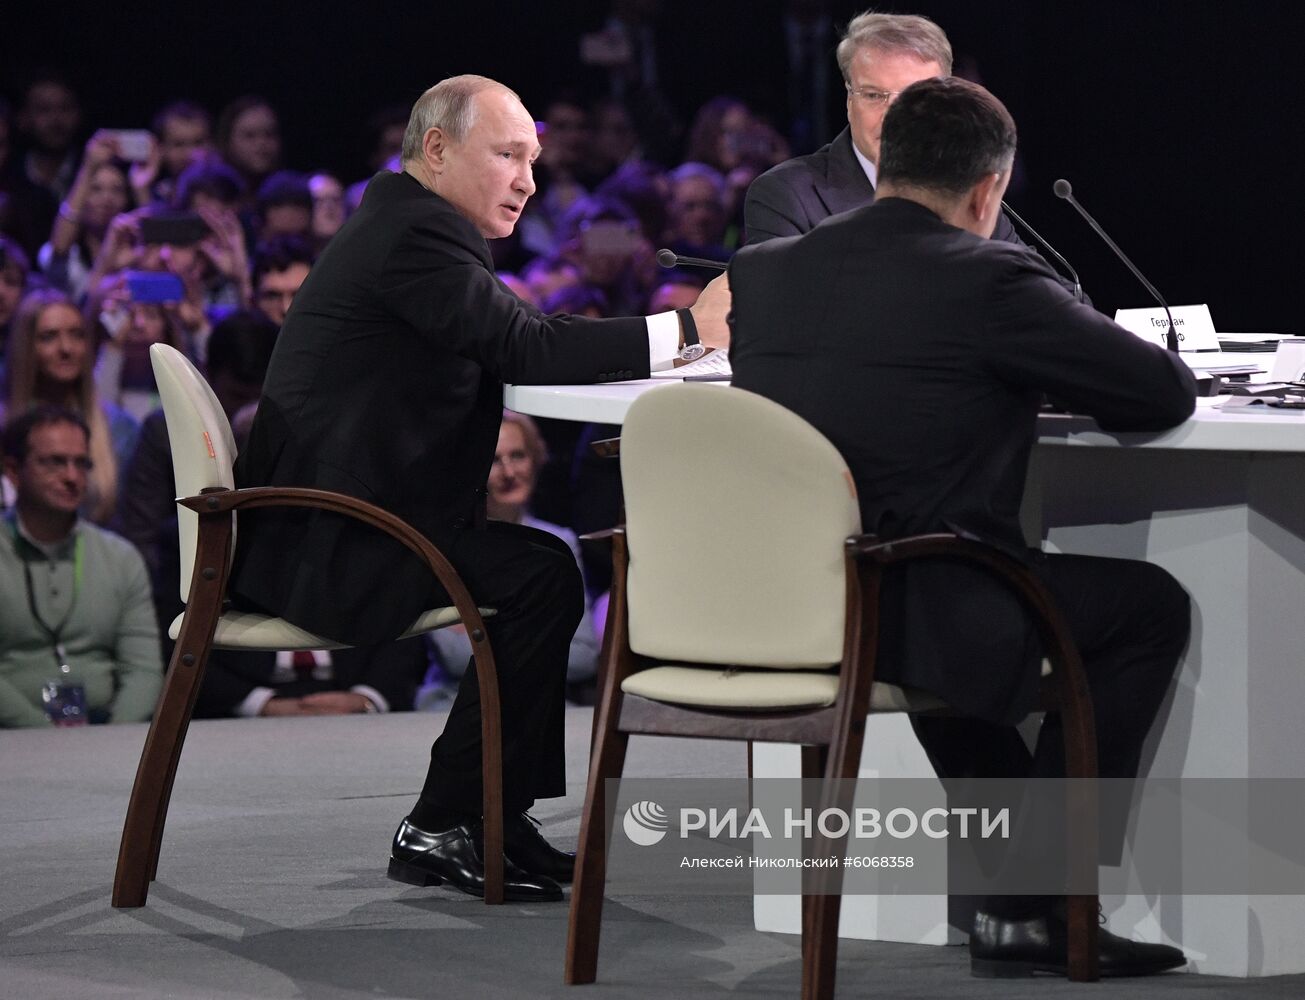 Президент РФ В. Путин принял участие в форуме Восточной Европы по искусственному интеллекту AIJ